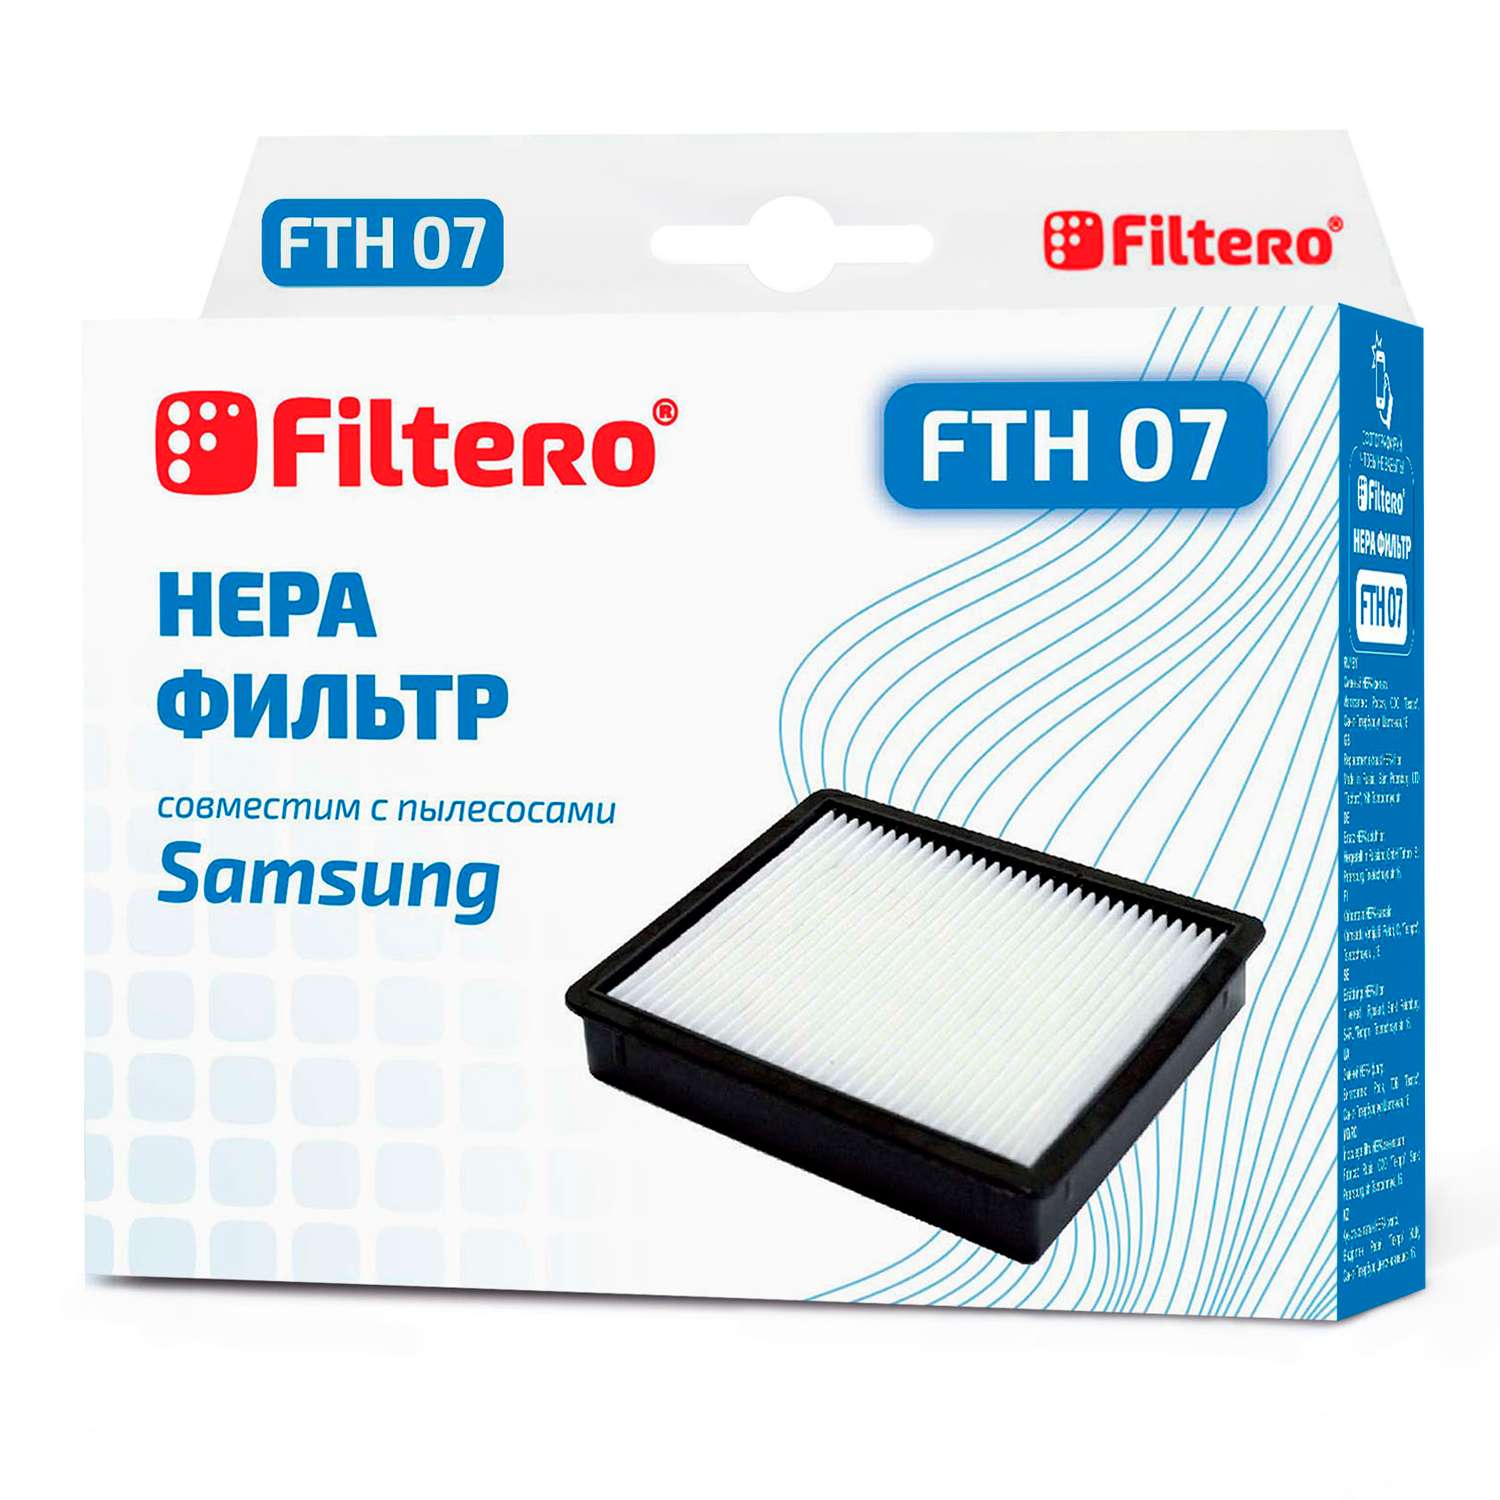 Фильтр HEPA Filtero FTH 07 SAM для пылесосов Samsung - фото 1